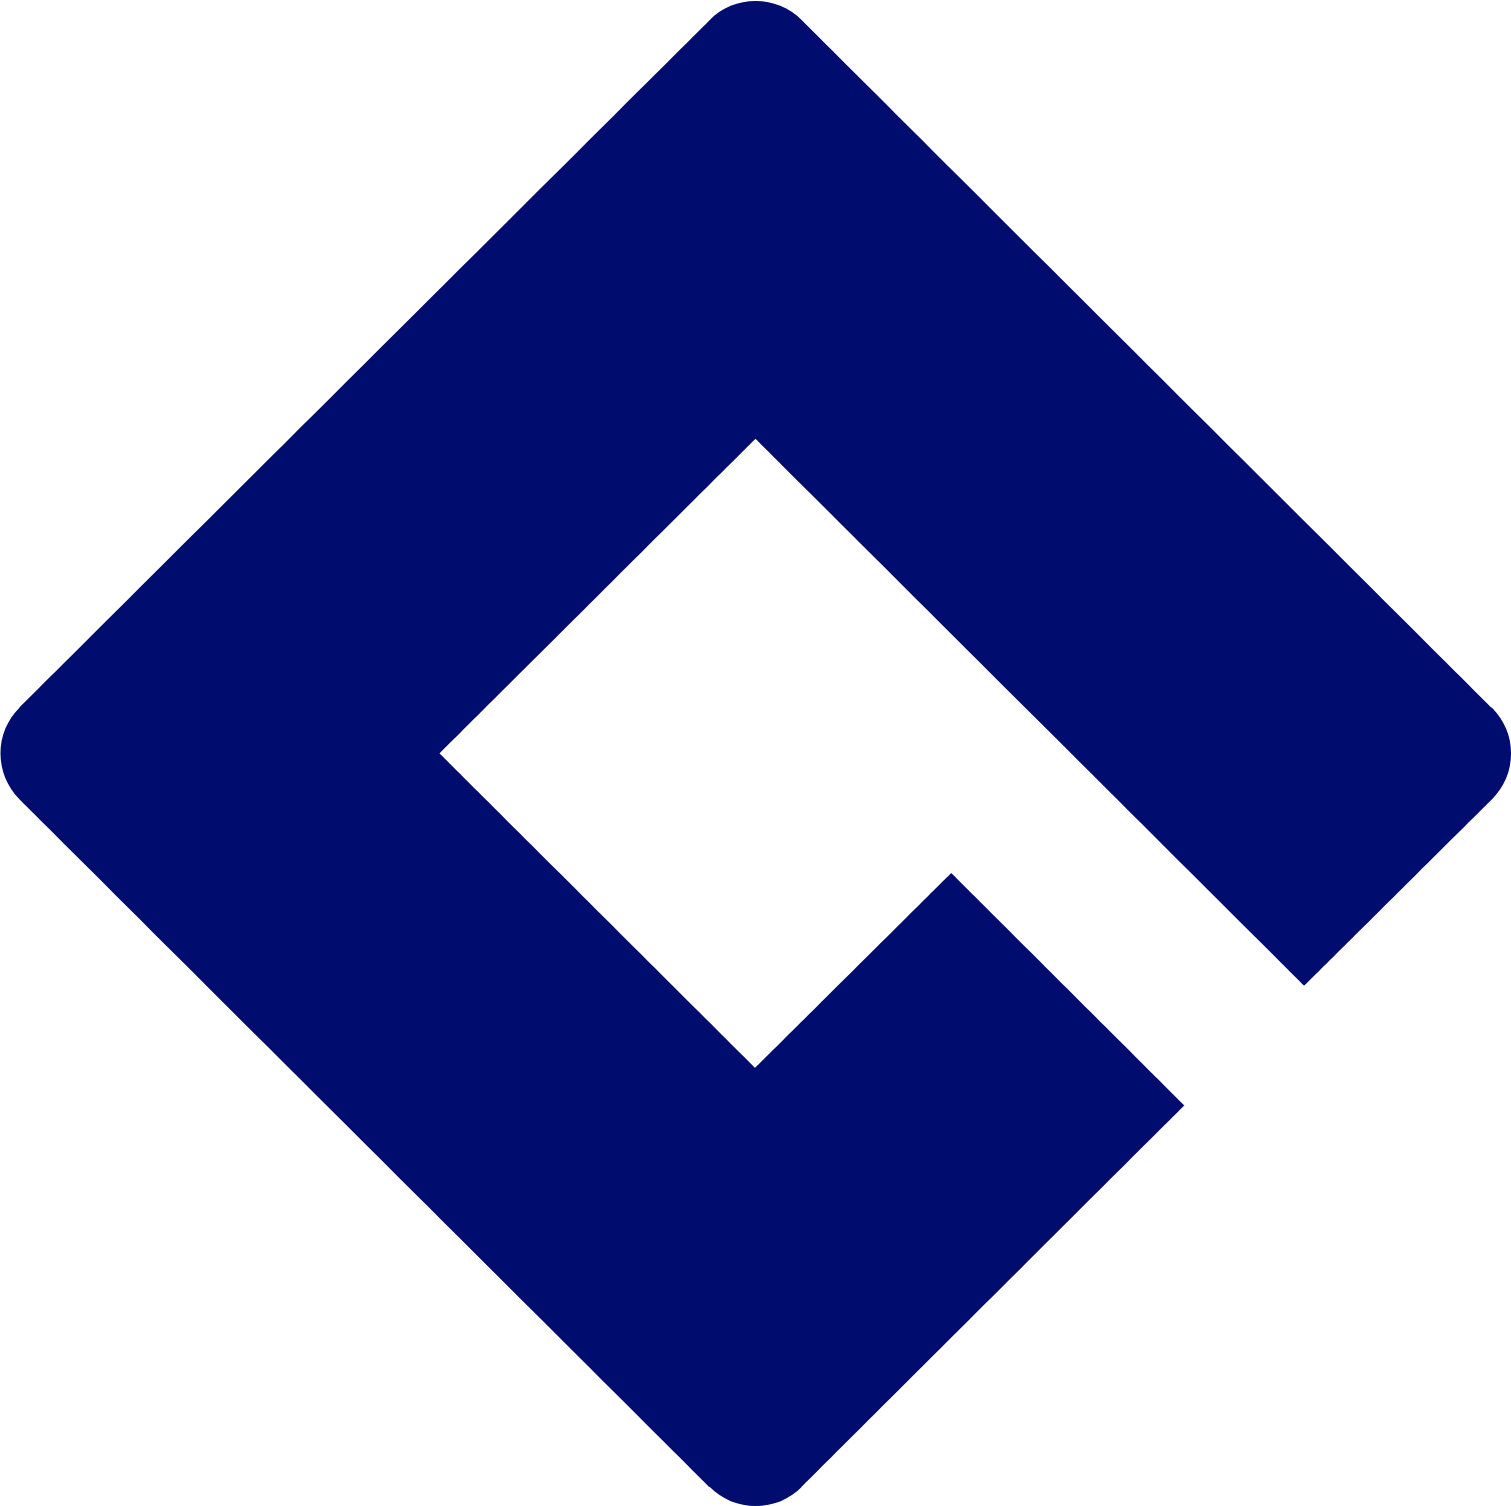 Bâloise logo (PNG transparent)